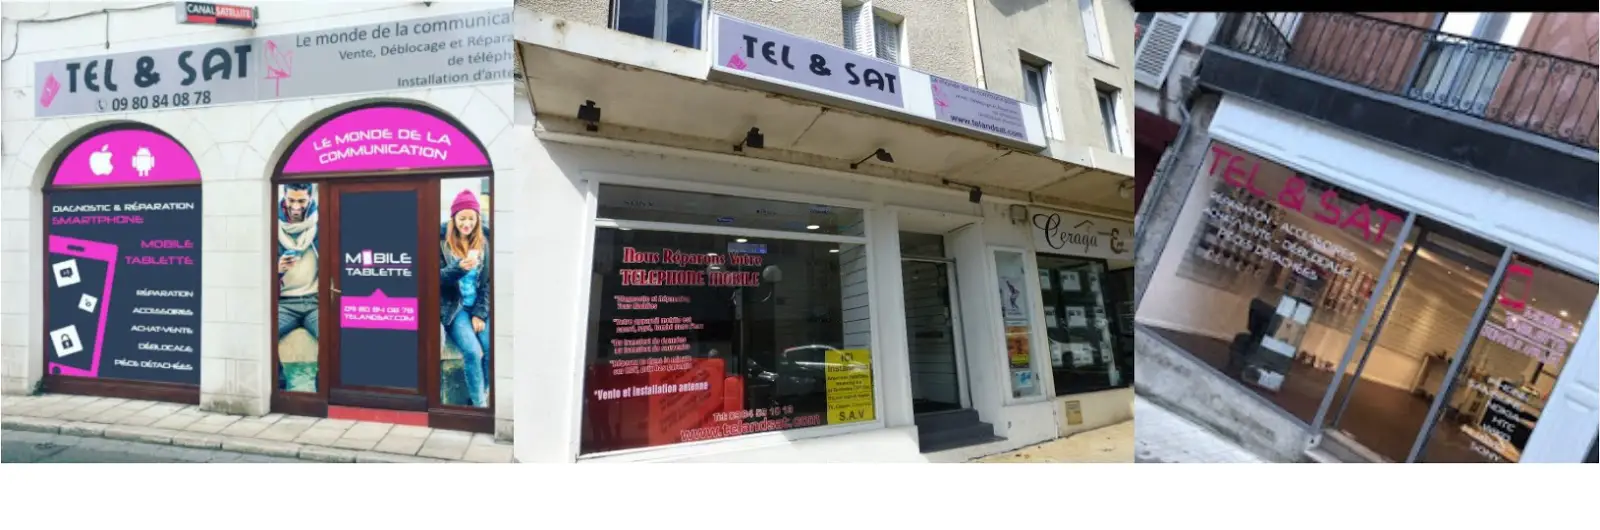 photo de la boutique de Tel & Sat réparation téléphone mobile,déblocage,ventes achat